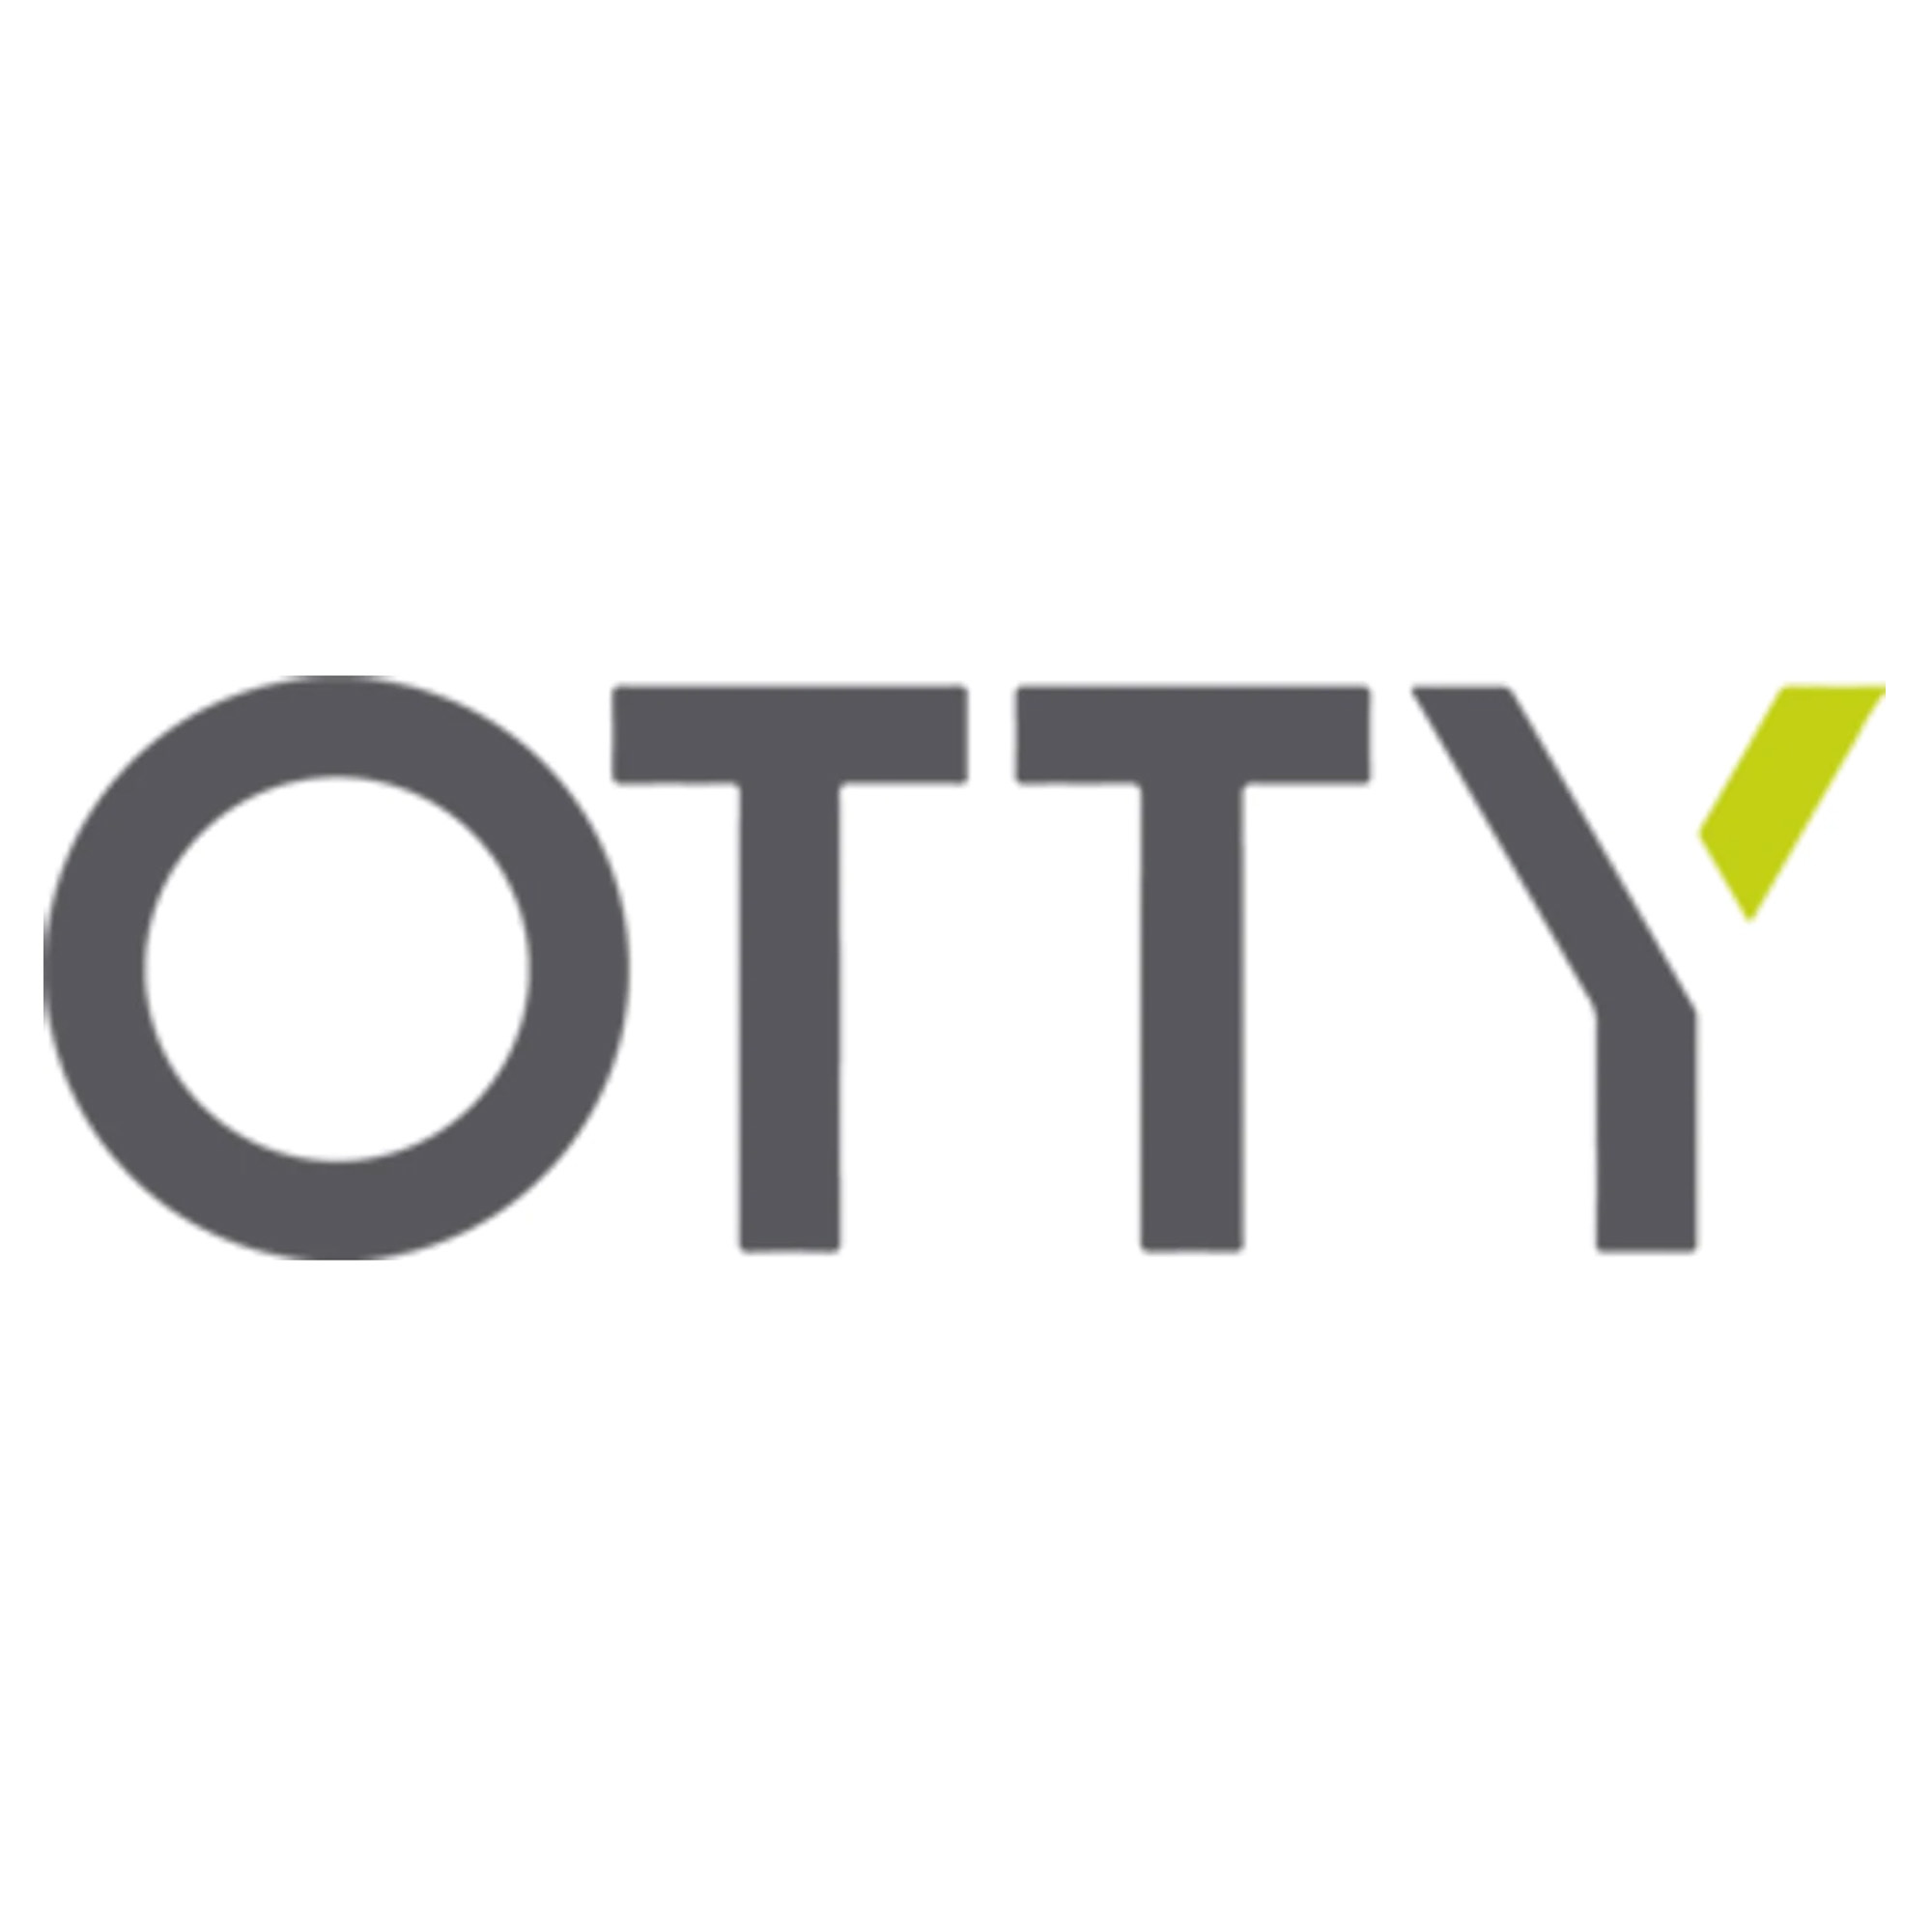 Otty Logo